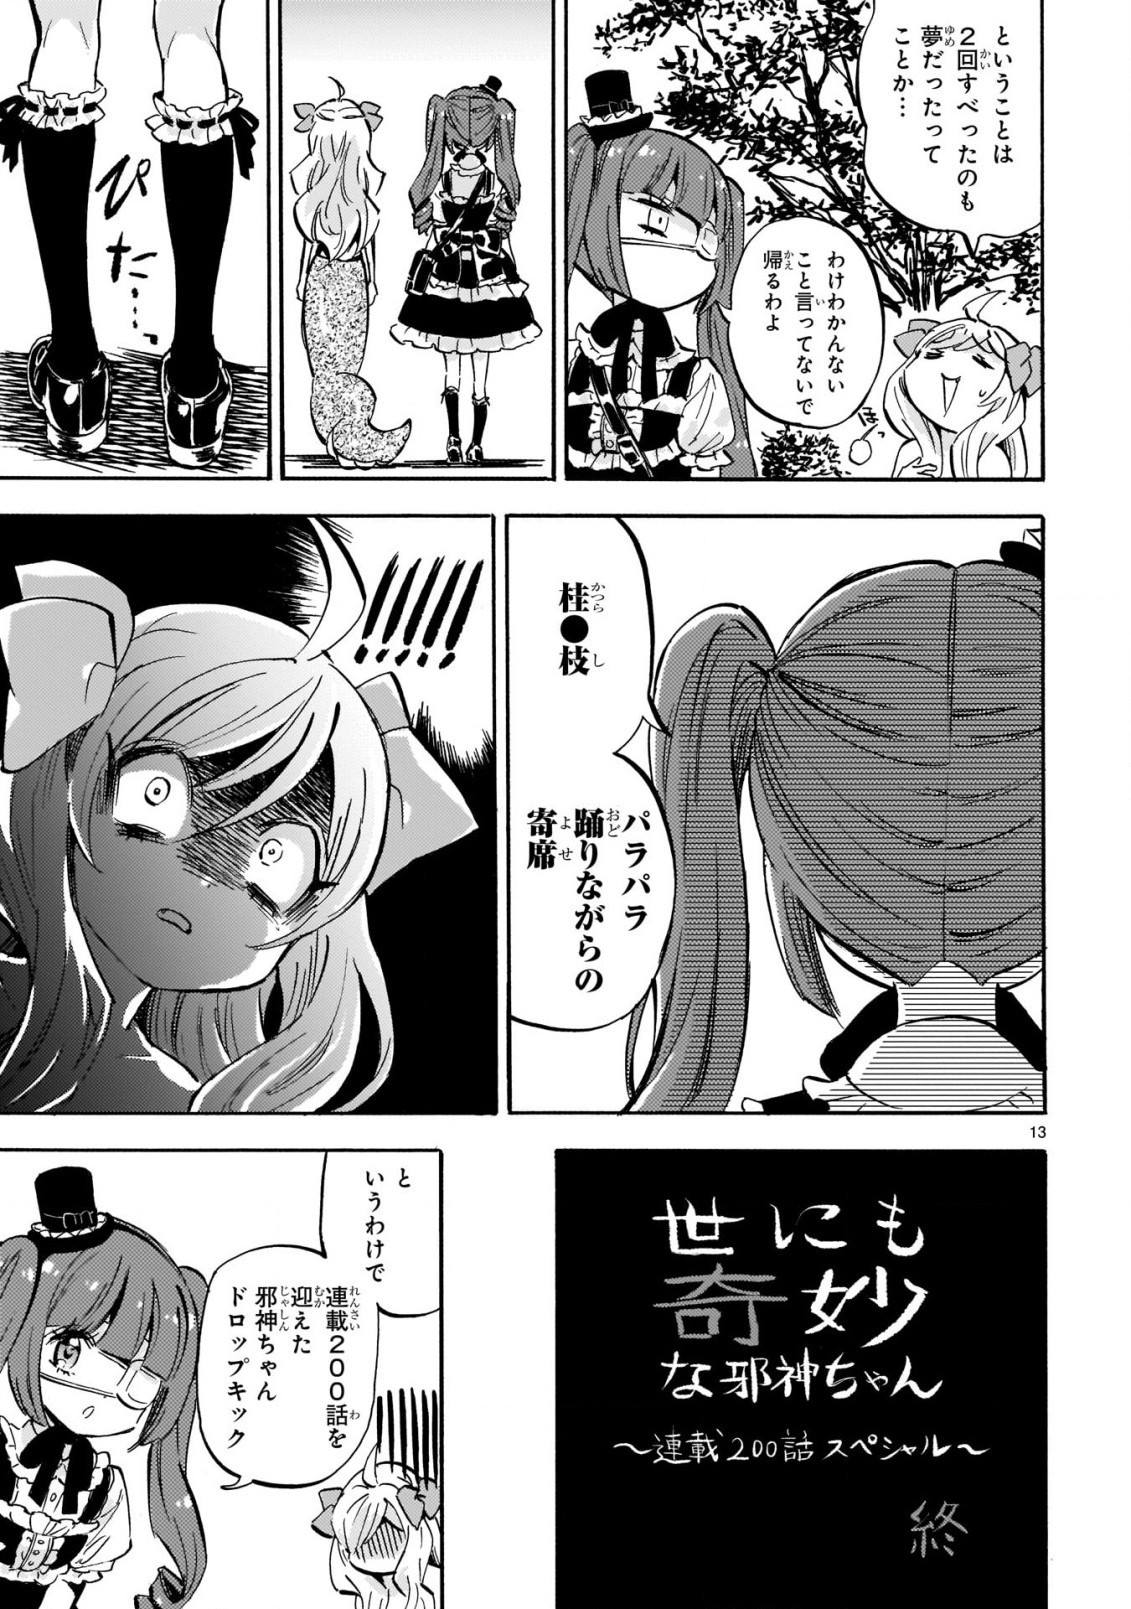 Jashin-chan Dropkick - Chapter 201 - Page 13